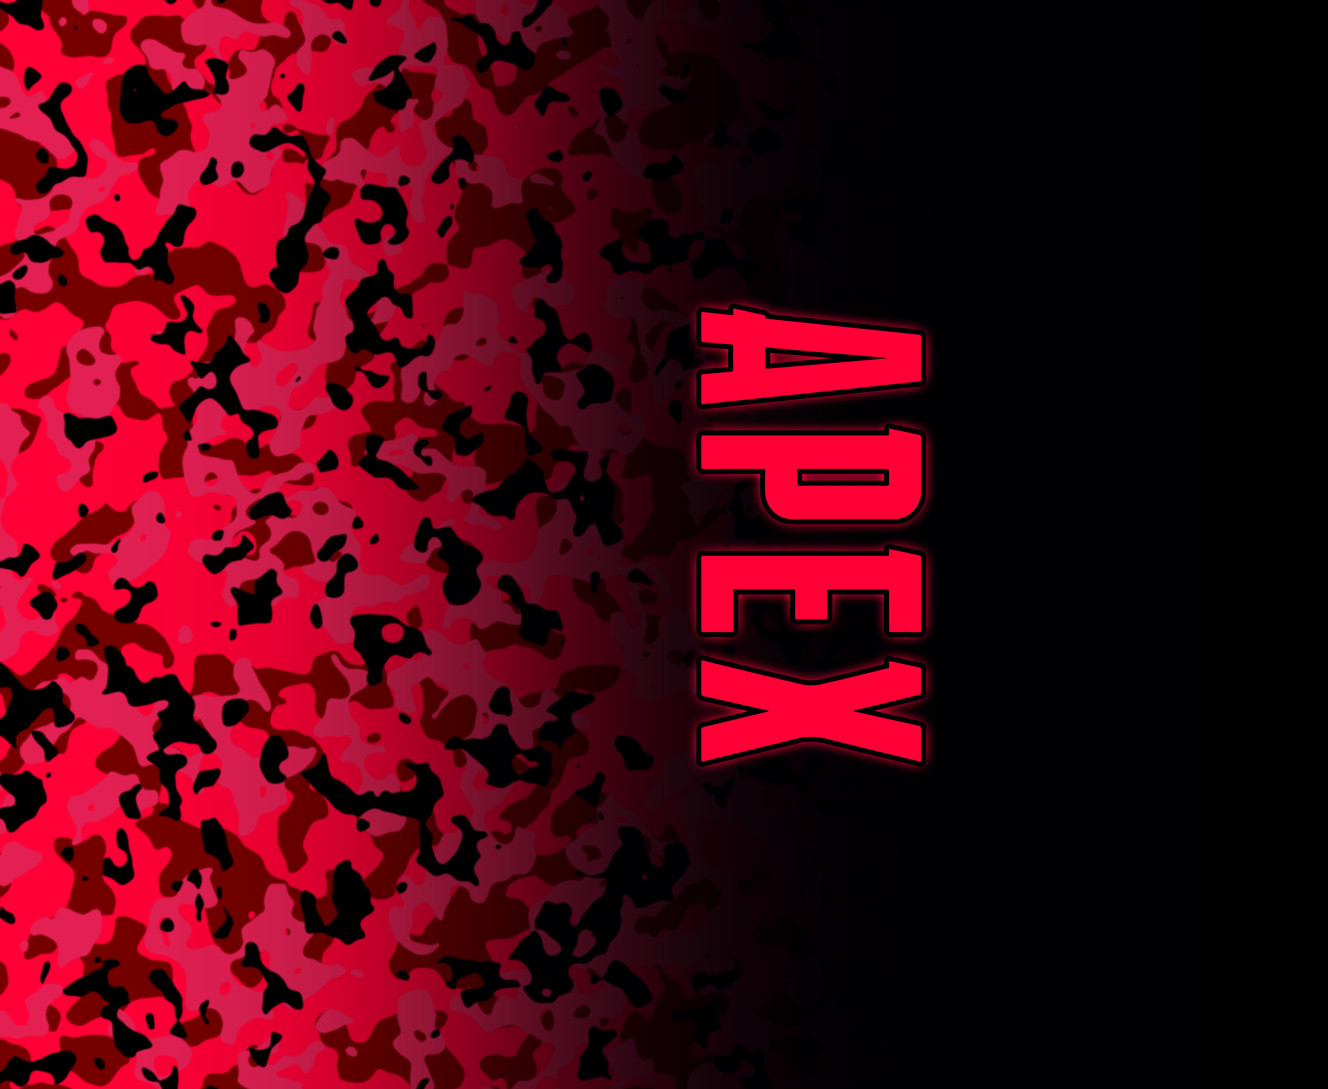 Apex Legends - Mouse Pad - APEX LEGENDS [9] - Mfest